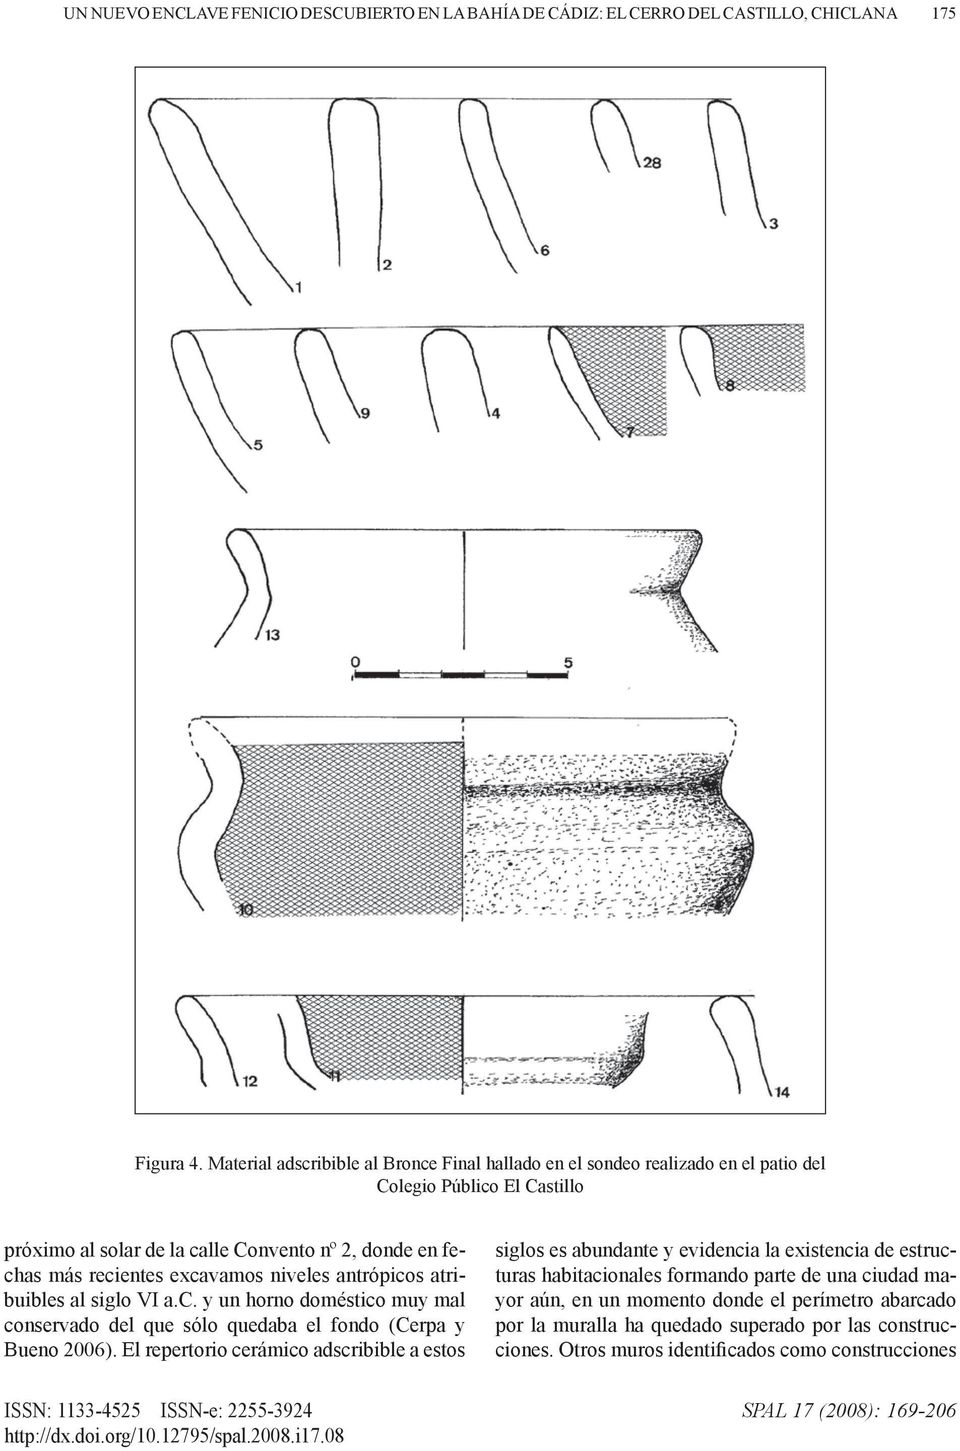 niveles antrópicos atribuibles al siglo VI a.c. y un horno doméstico muy mal conservado del que sólo quedaba el fondo (Cerpa y Bueno 2006).